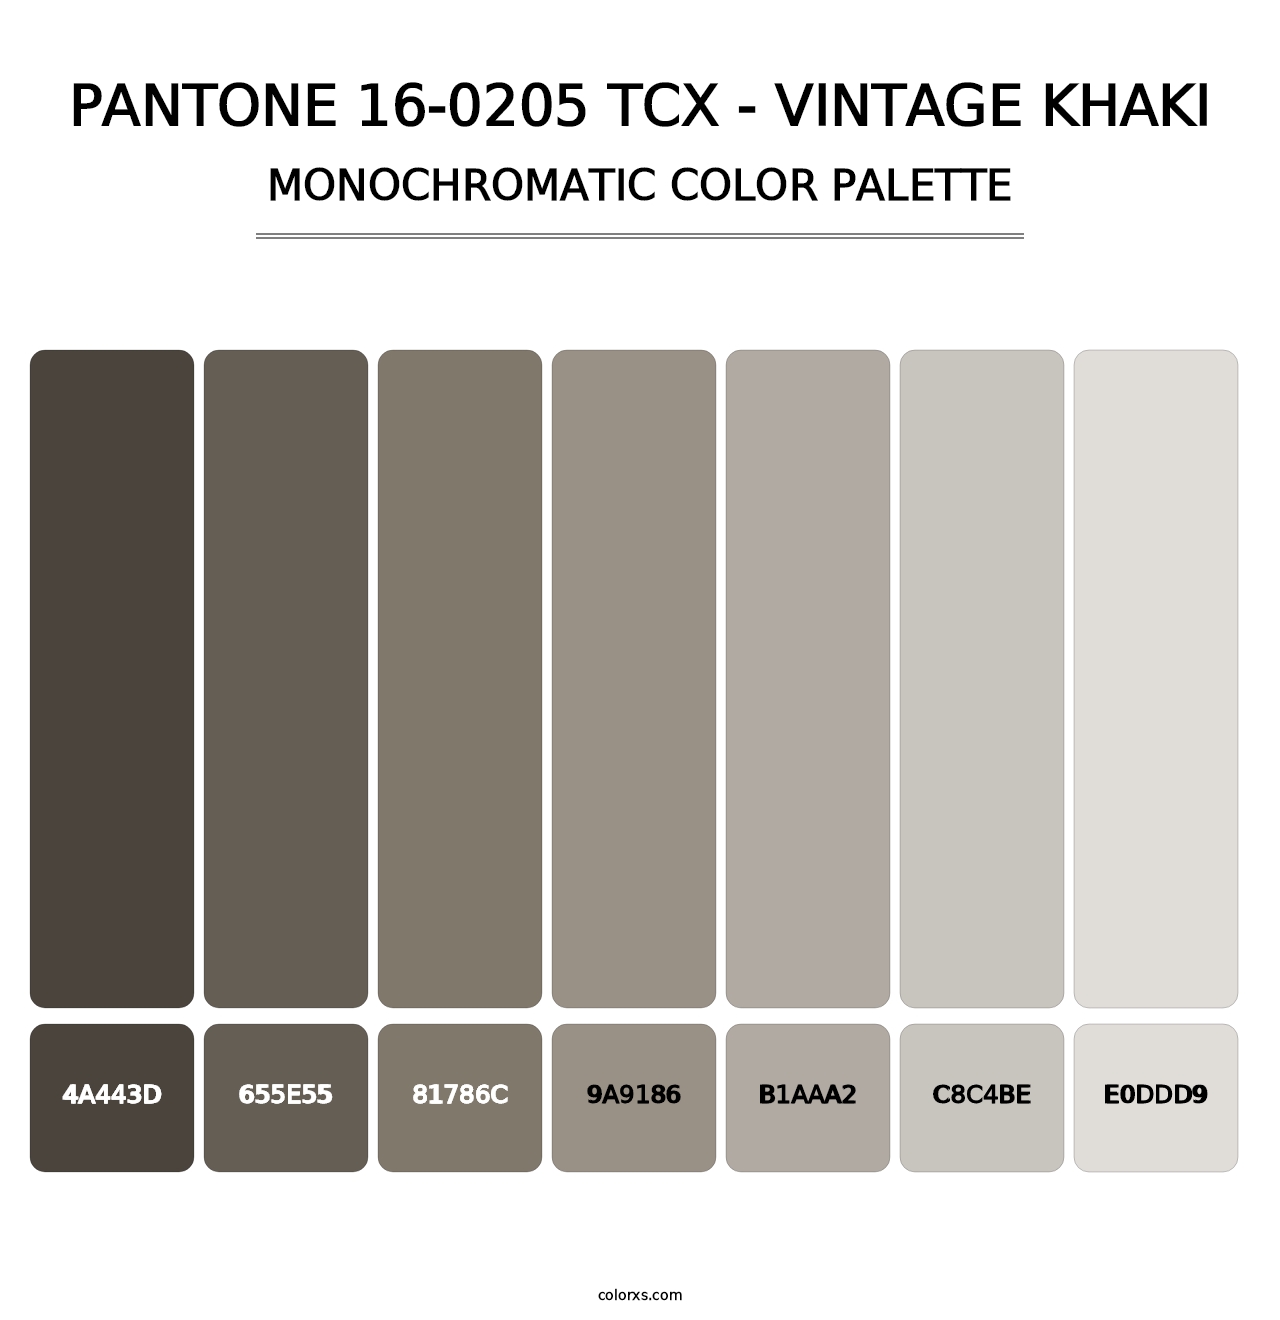 PANTONE 16-0205 TCX - Vintage Khaki - Monochromatic Color Palette